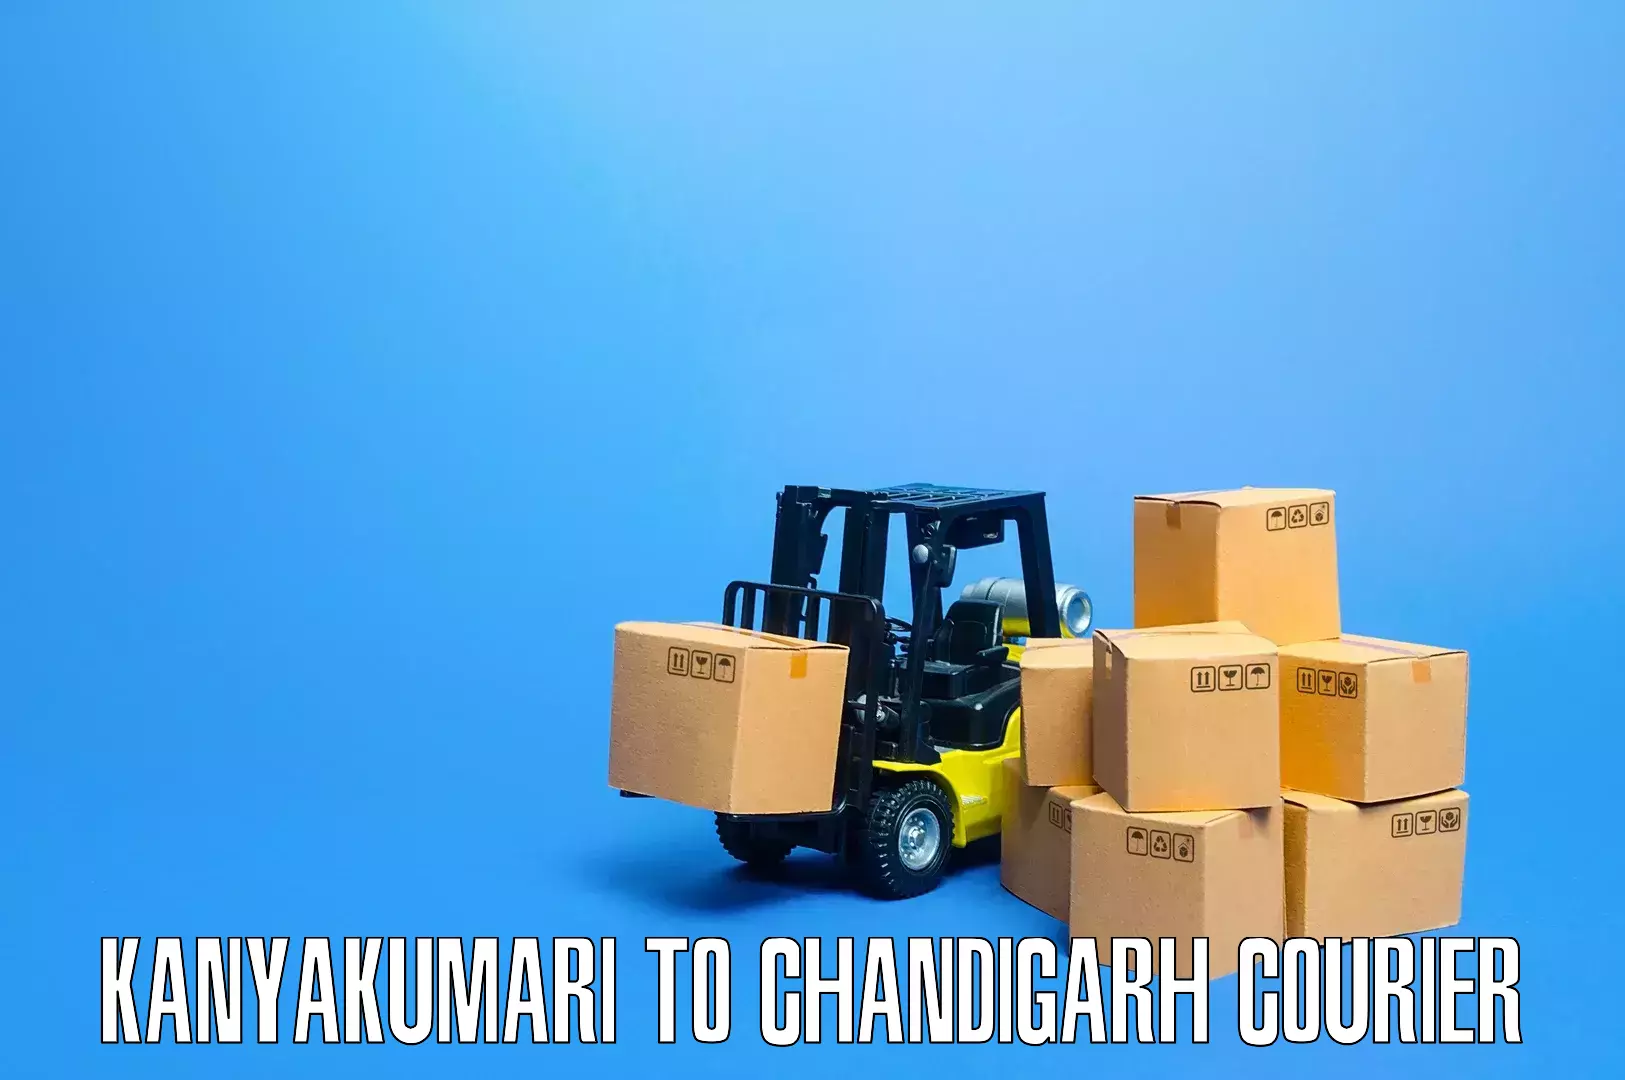 Quality relocation assistance Kanyakumari to Chandigarh